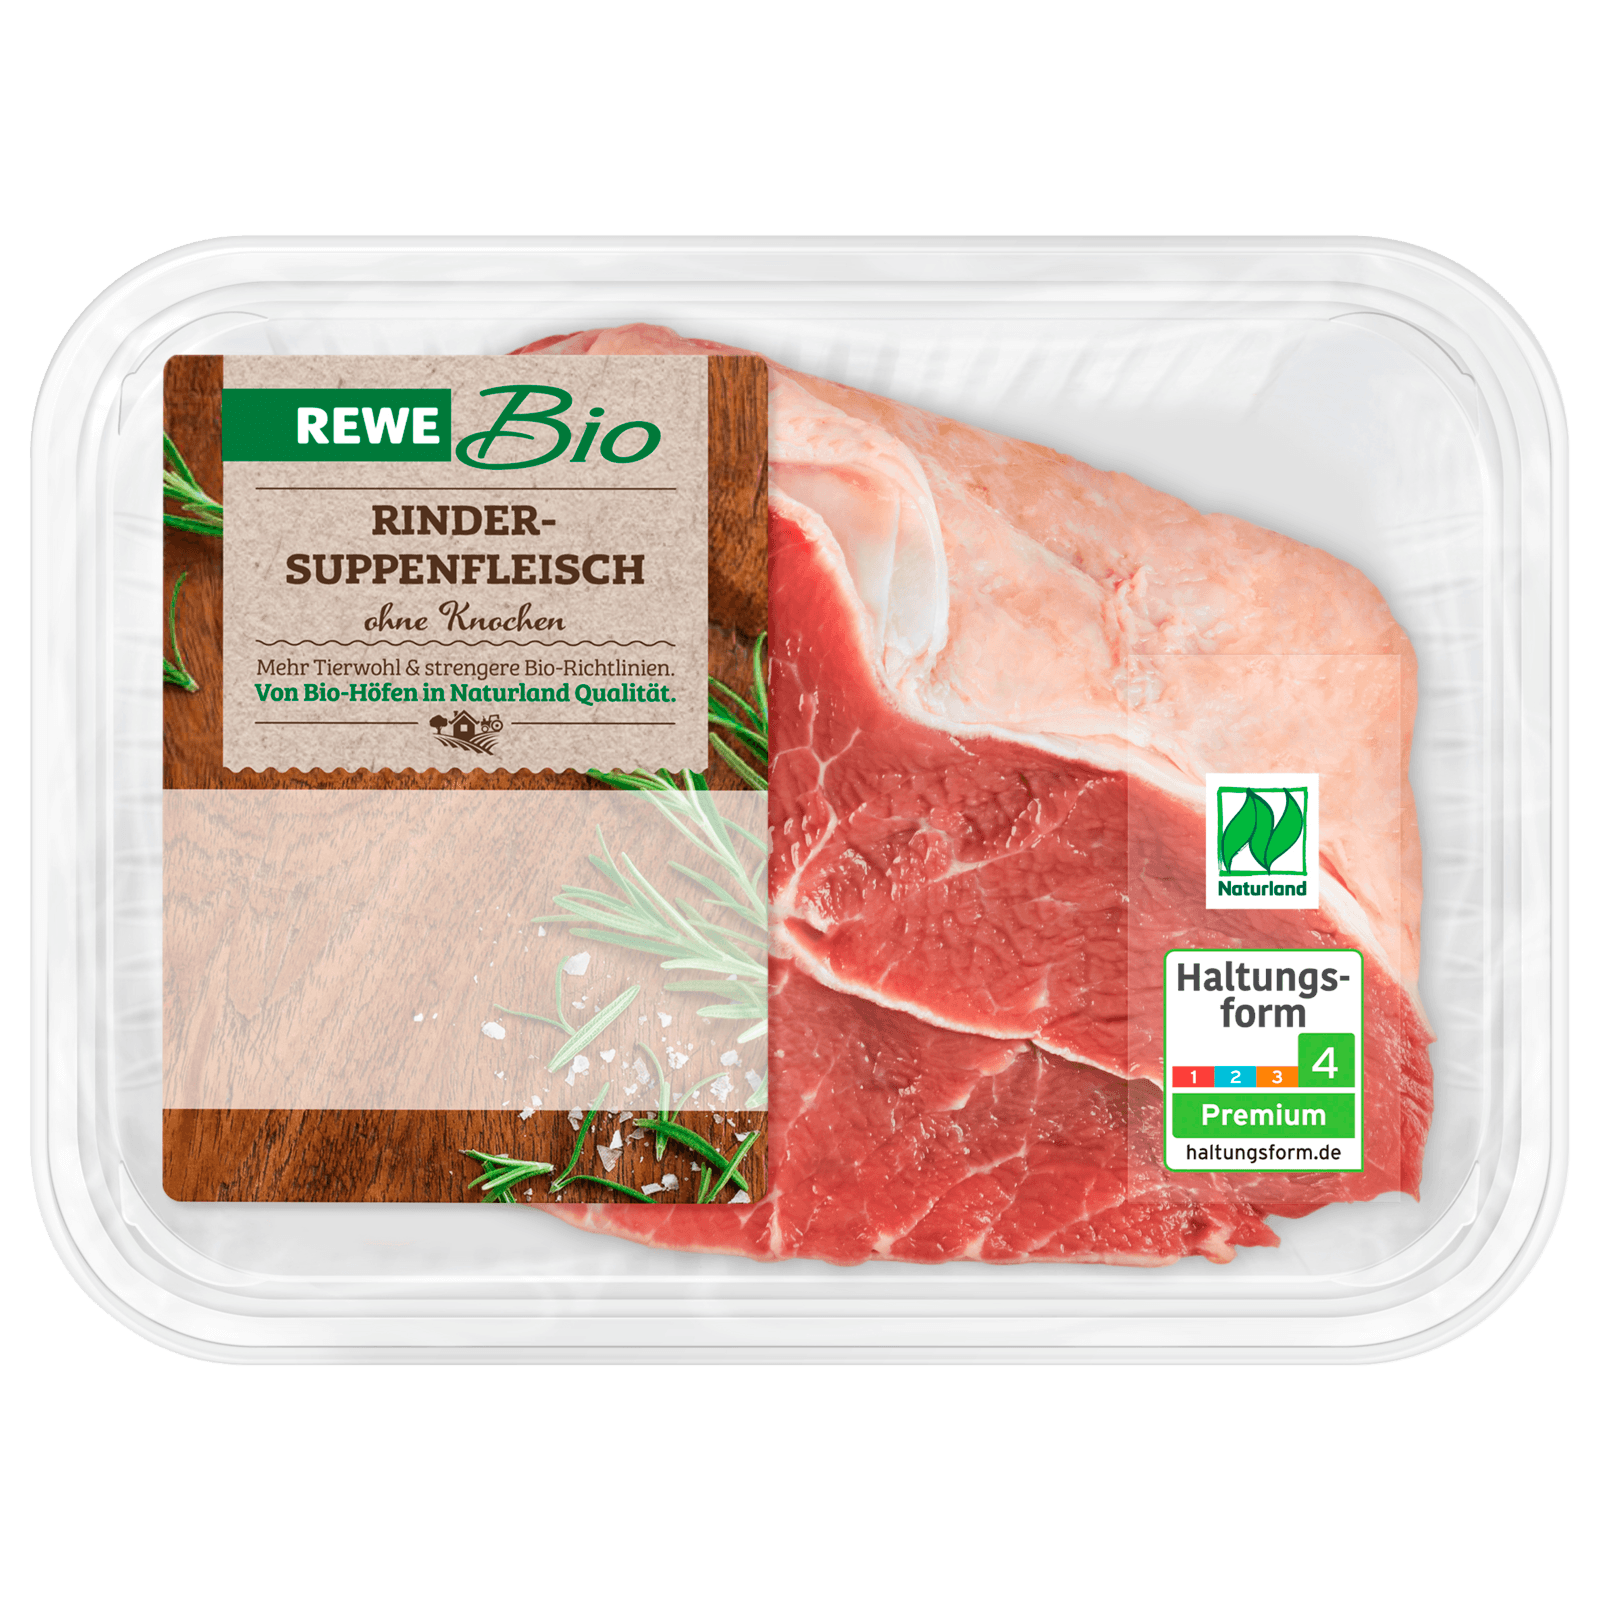 REWE Bio Rinder-Suppenfleisch 400g